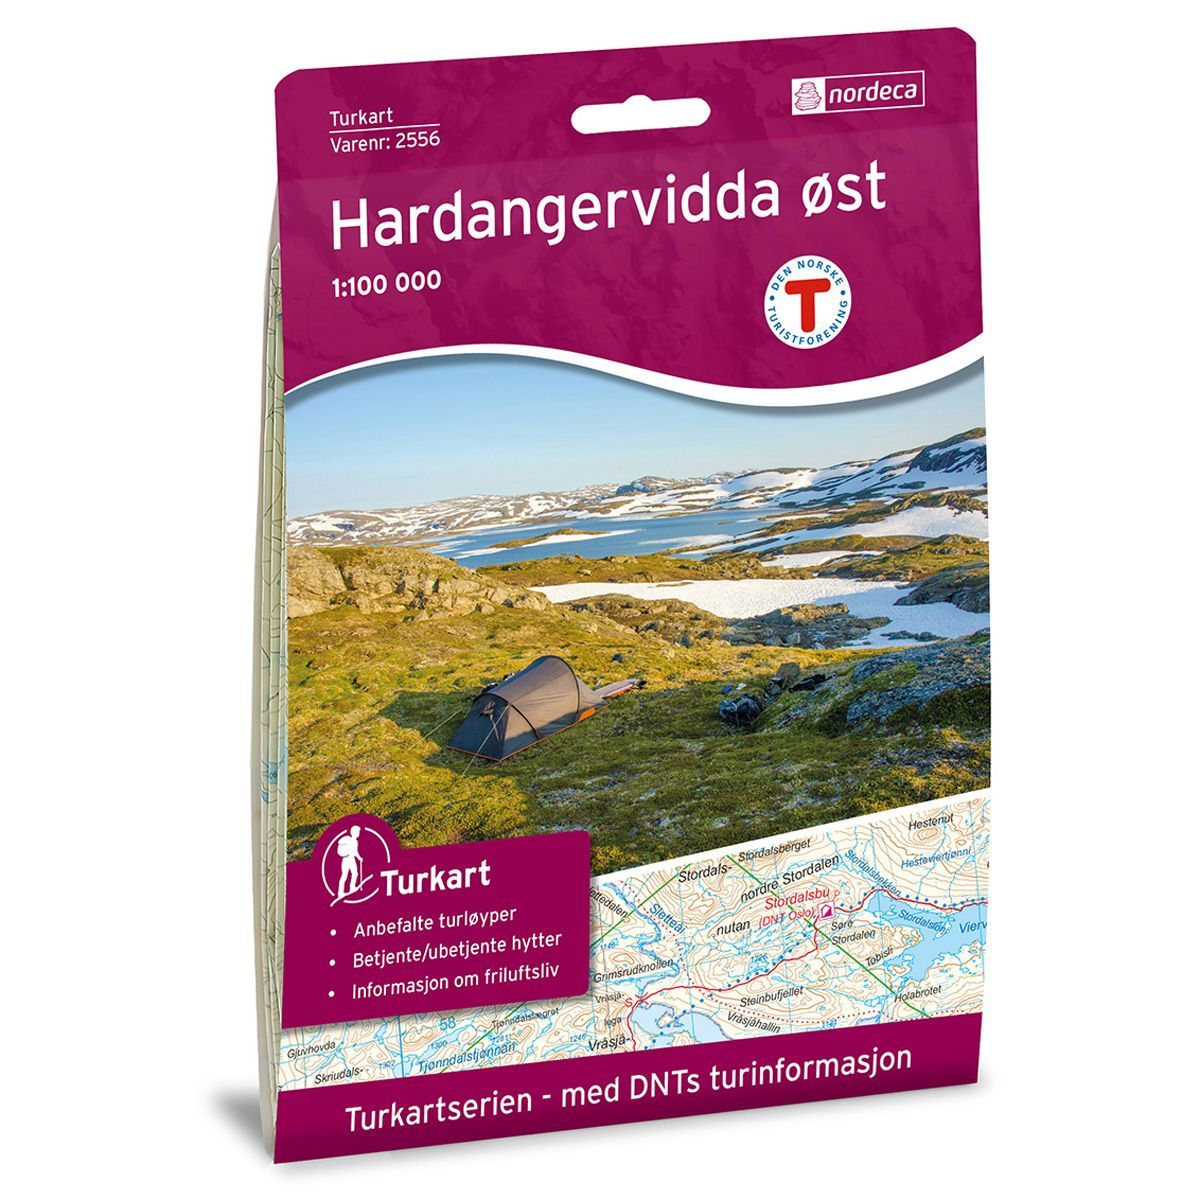 Bilde av Hardangervidda øst 1:100 000